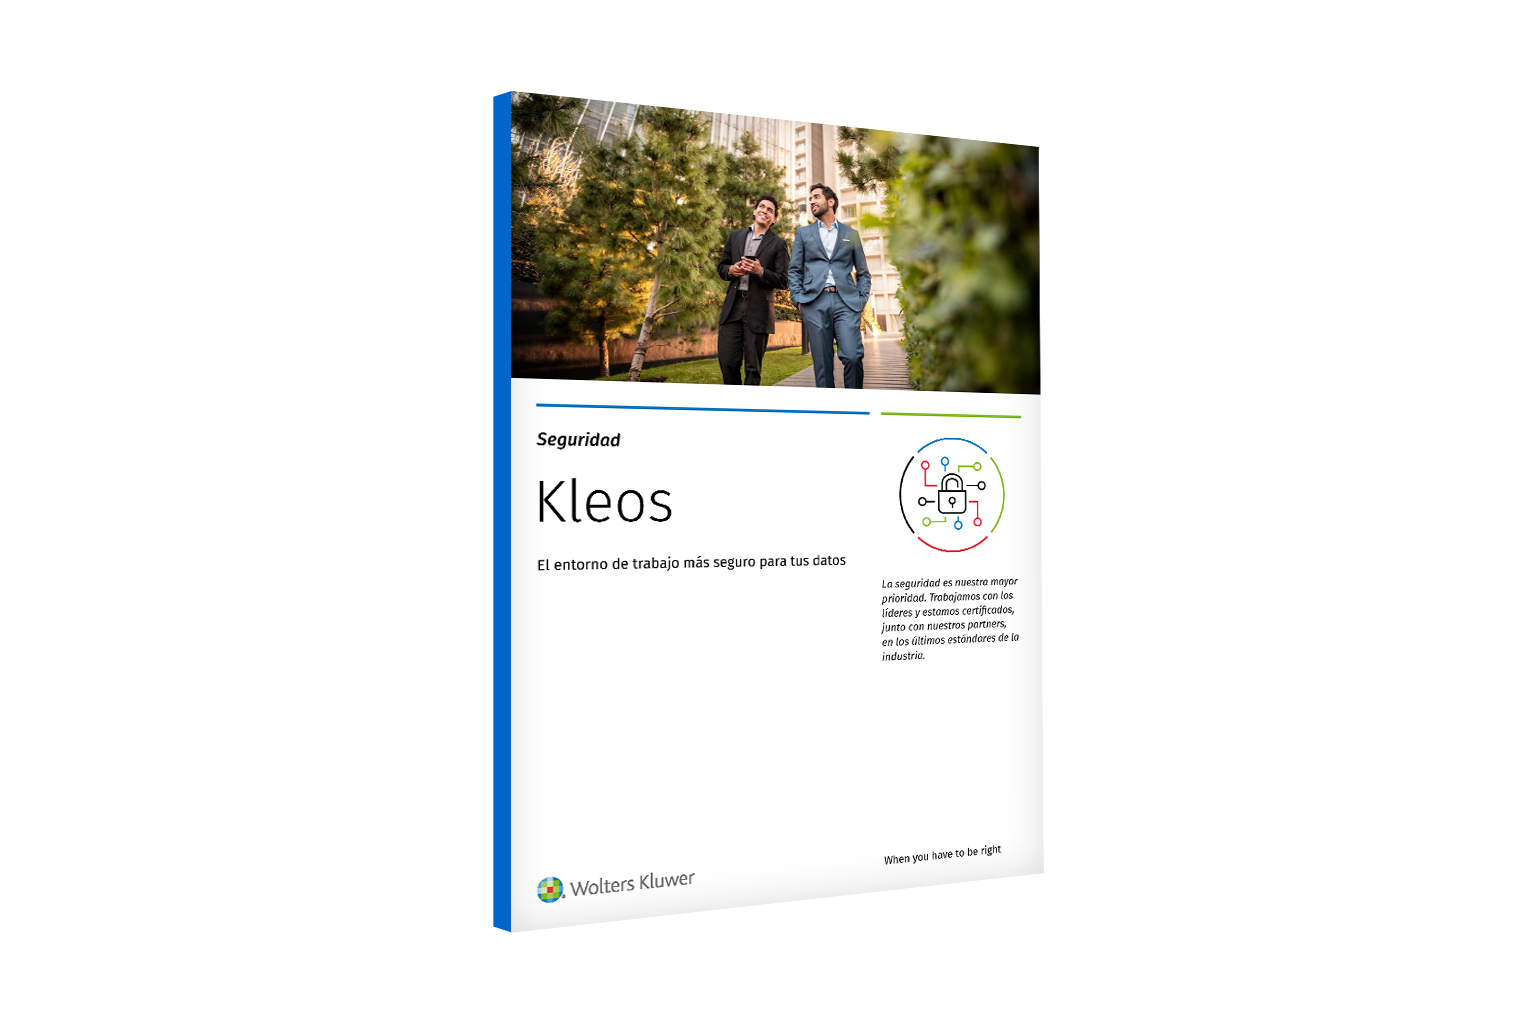 Kleos-Security-ES-1536x1024